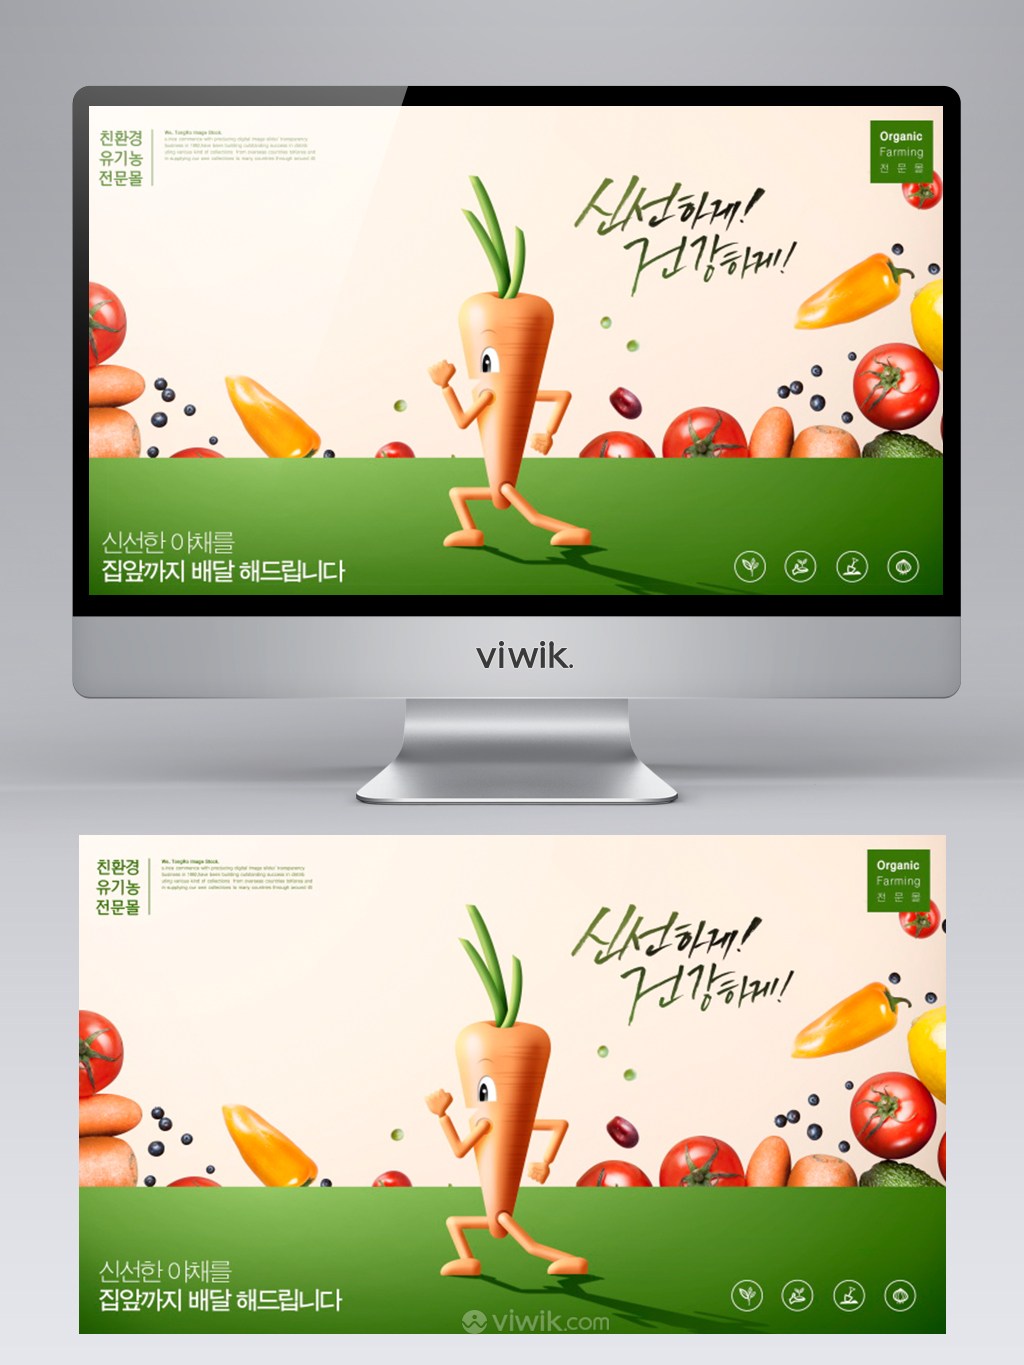 新鲜有机蔬果胡萝卜奔跑插画素材banner海报设计素材